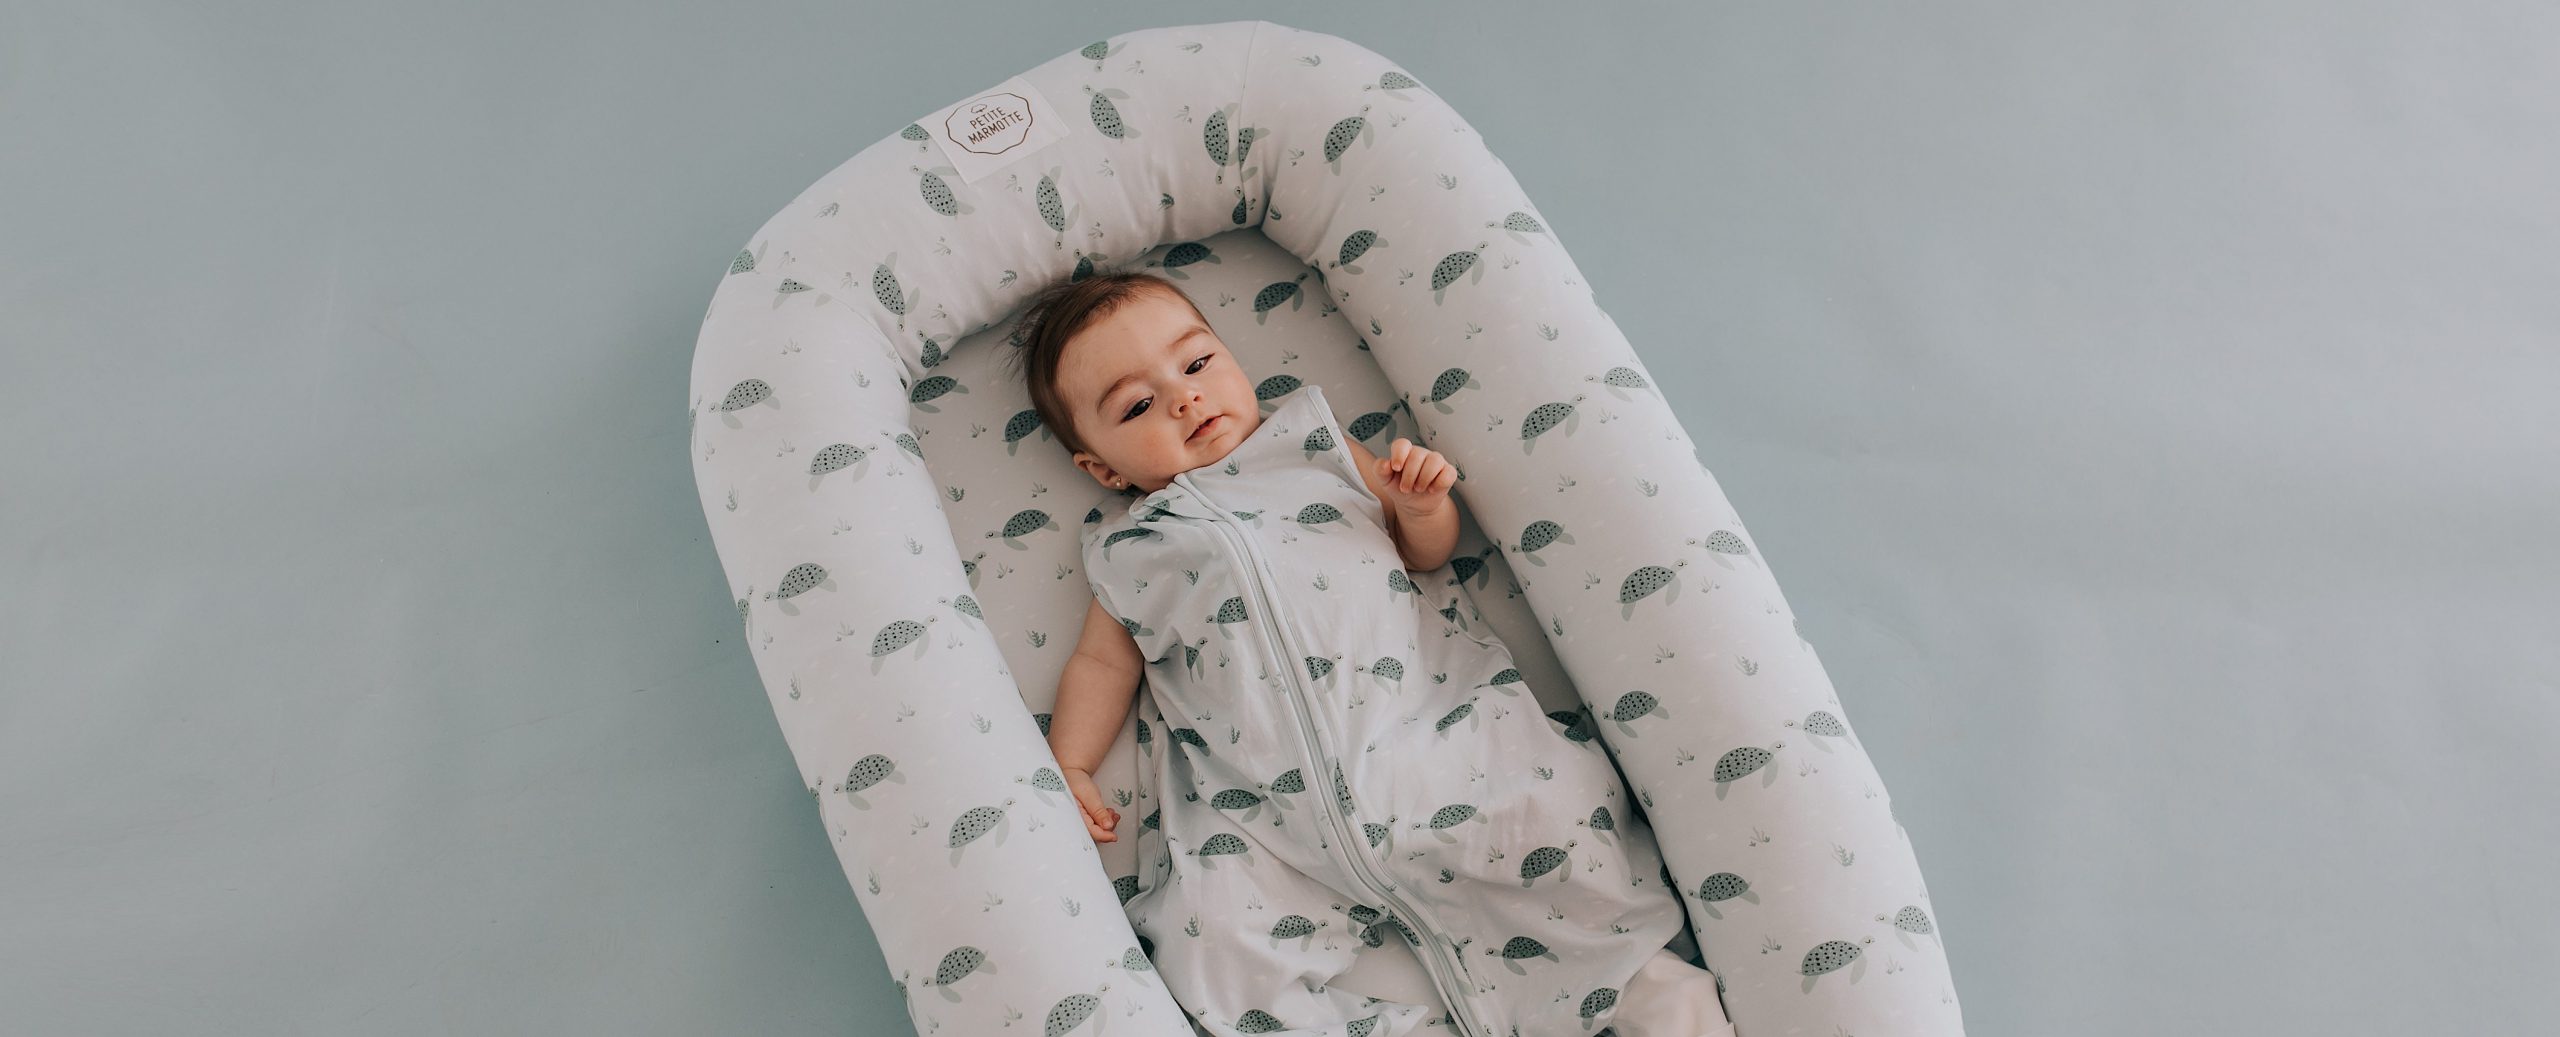 Vestir a un bebé recién nacido: consejos prácticos